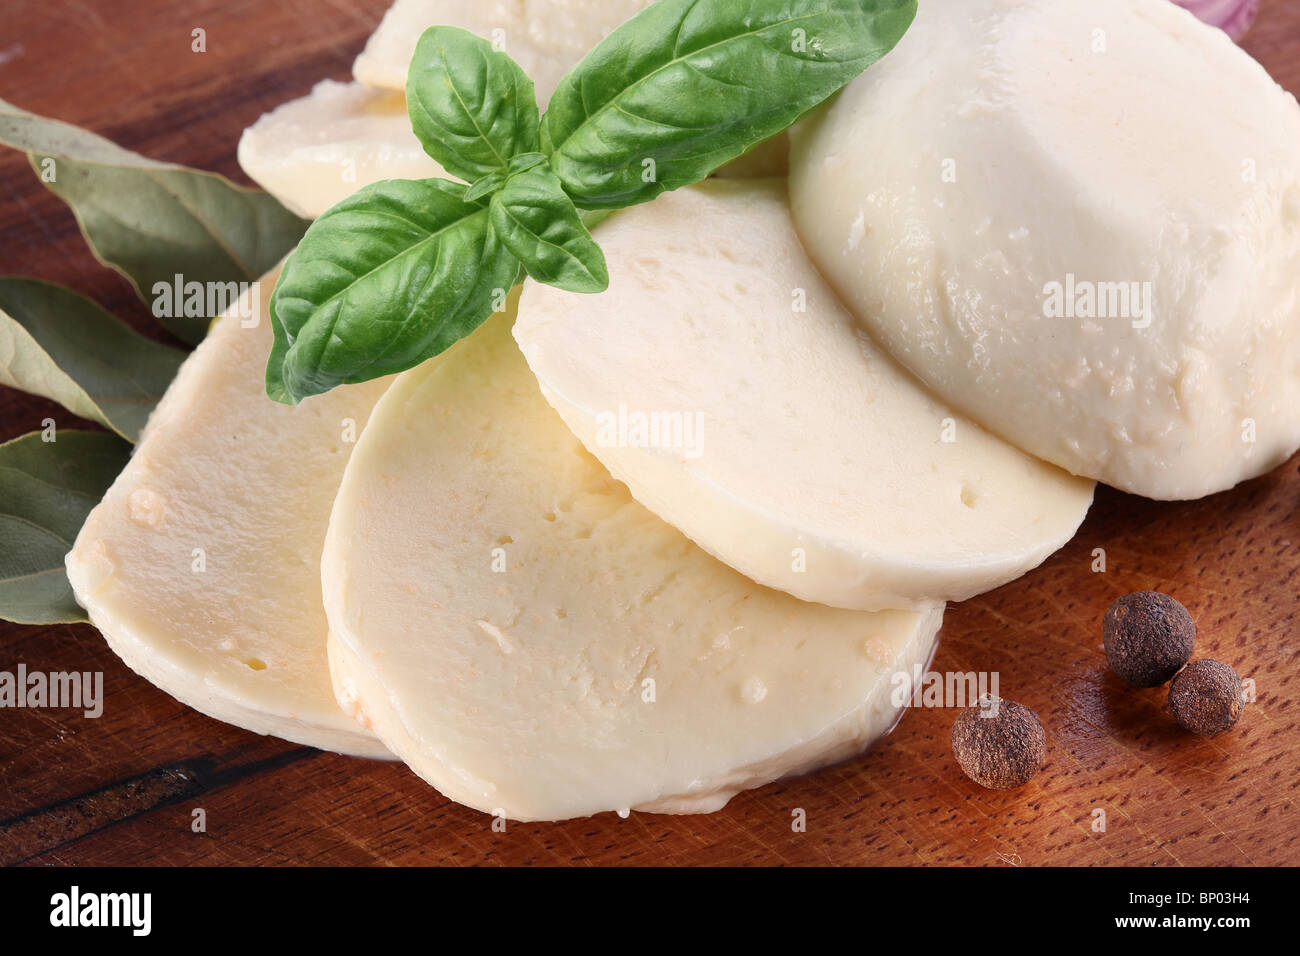 Le mozzarella et basilic sur une planche en bois Banque D'Images